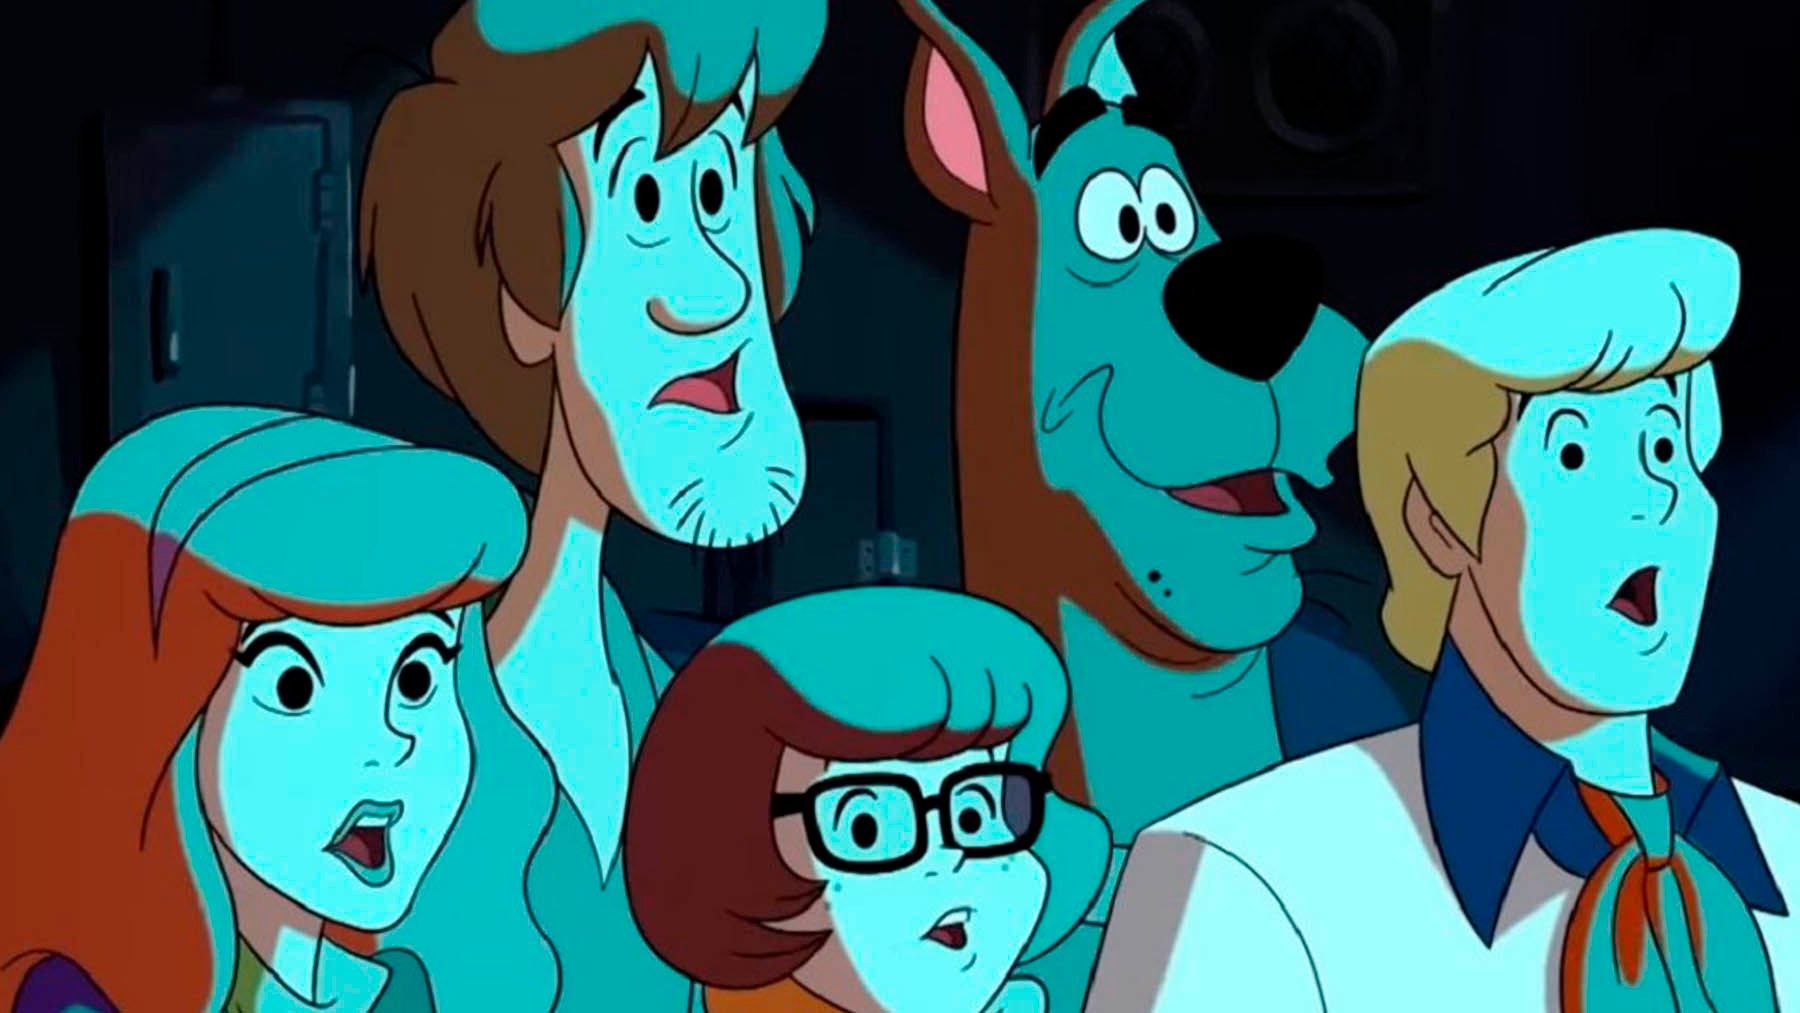 El personaje de Scooby-Doo que acaba de salir del armario